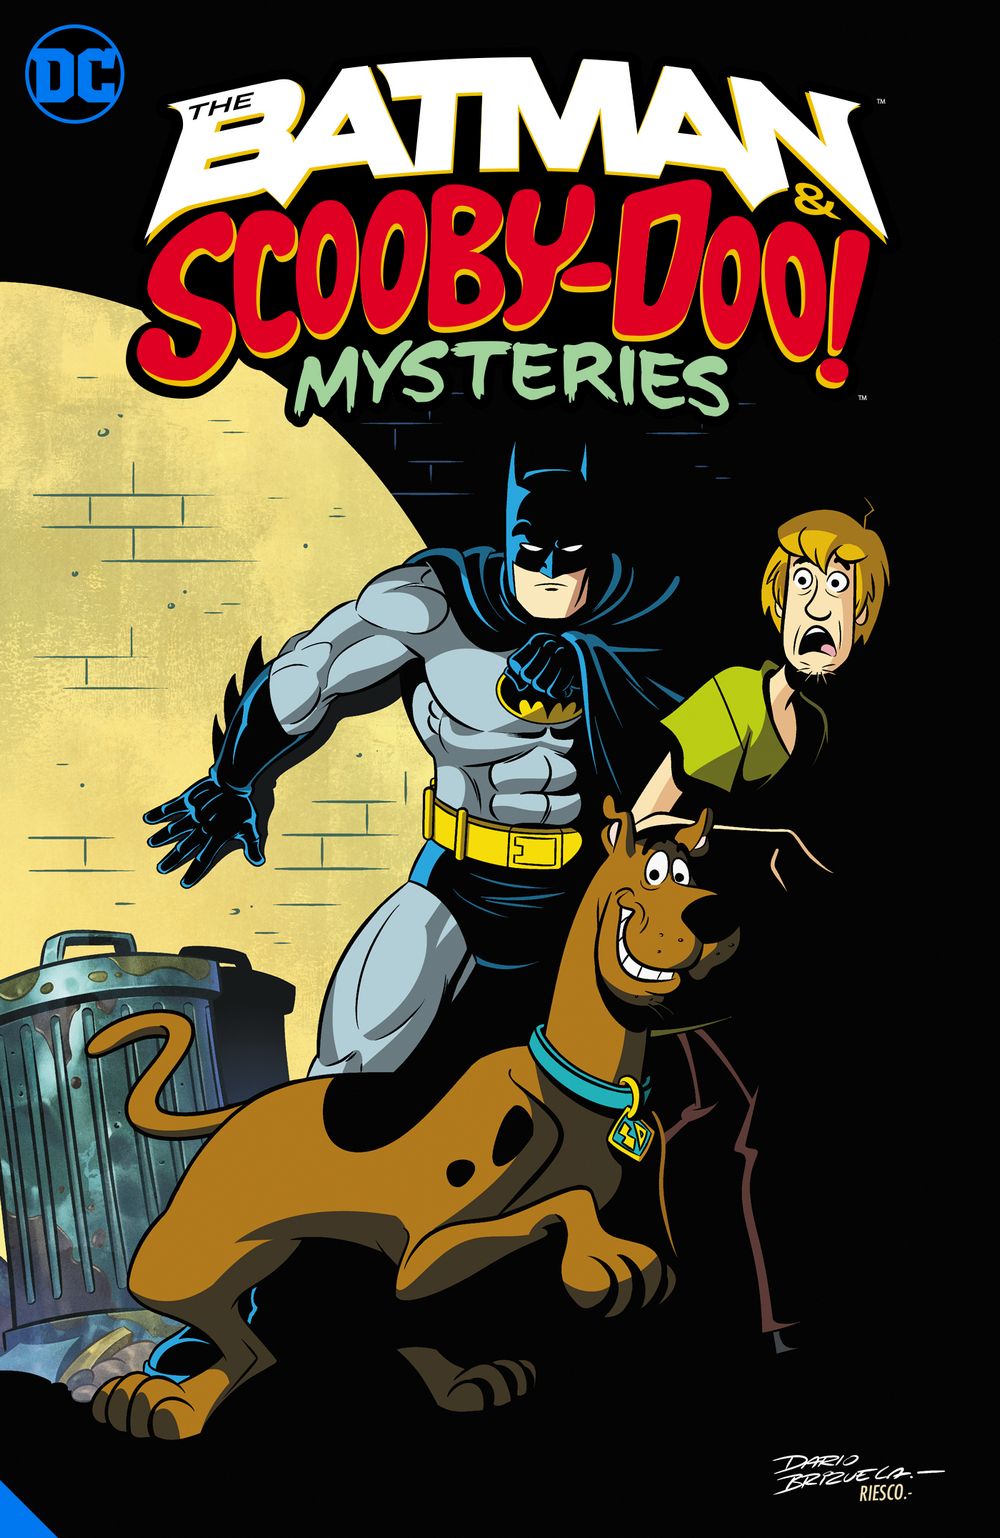 Batman and Scooby Doo Mysteries TP VOL 01